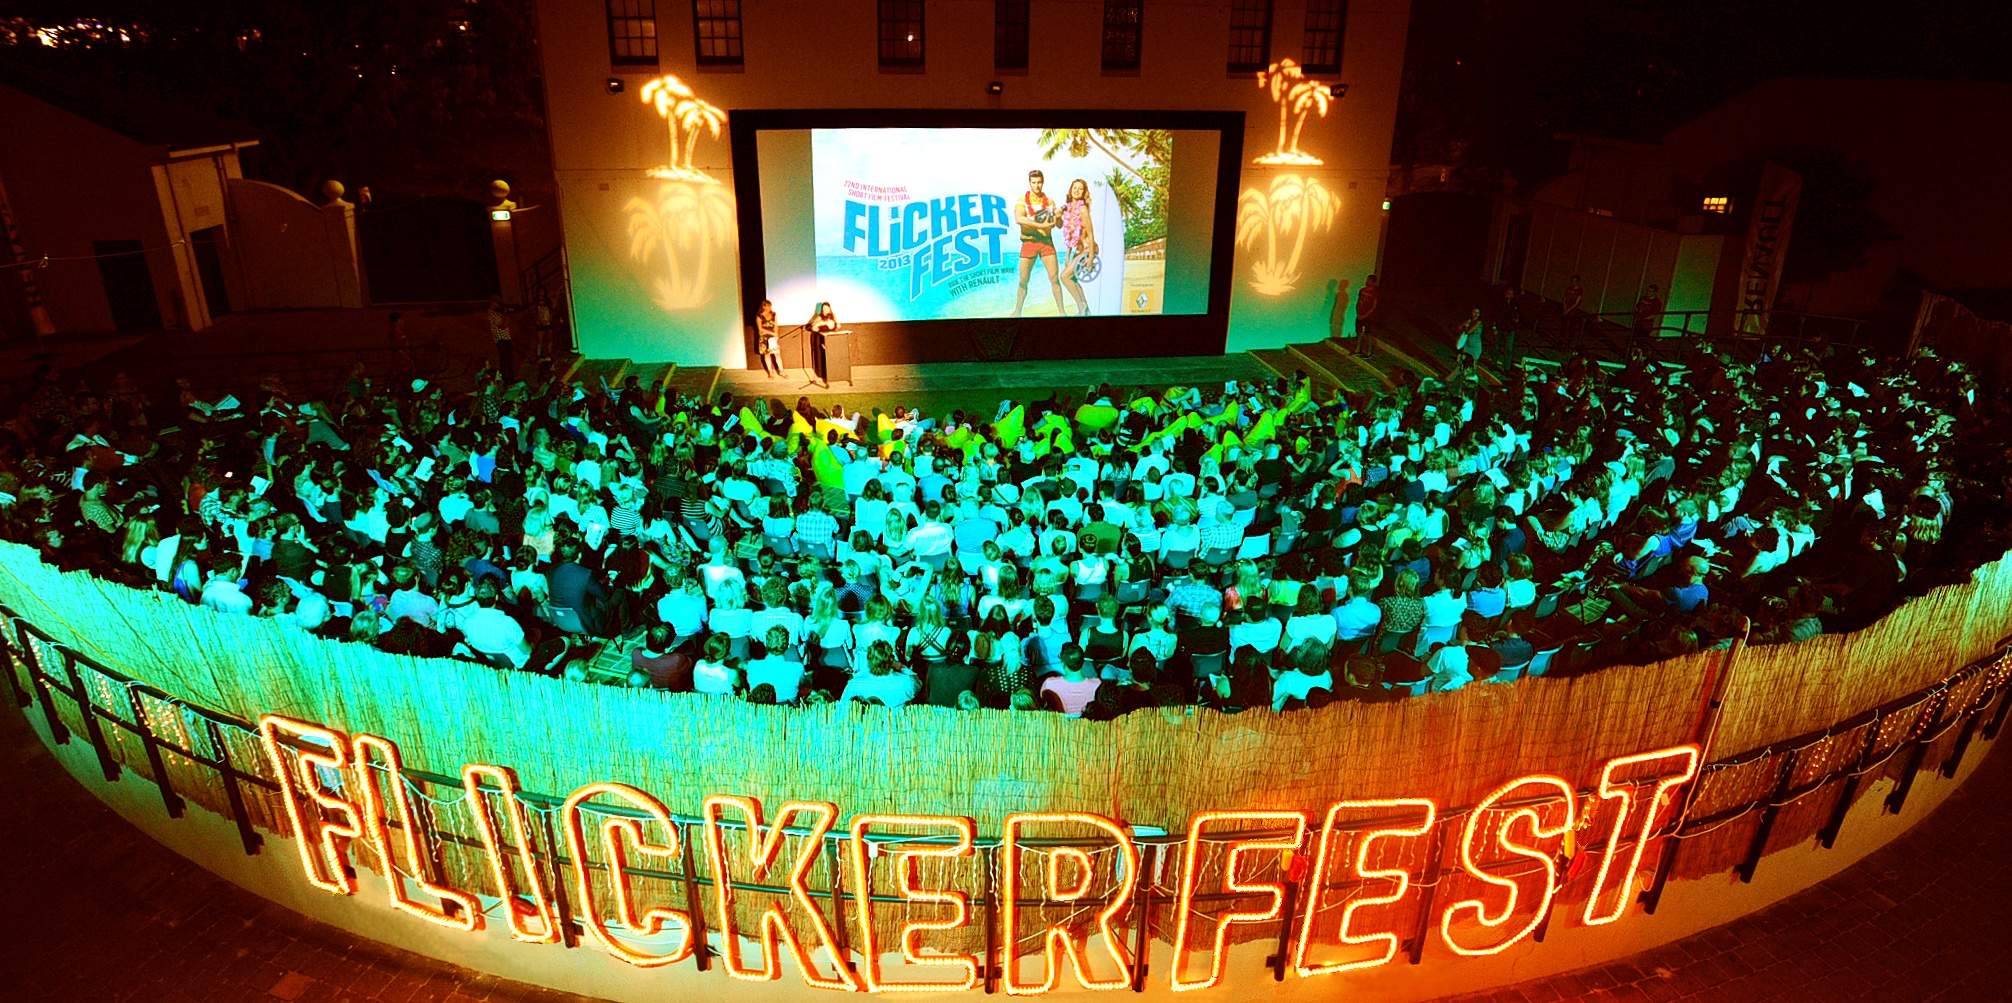 Flickerfest 2014